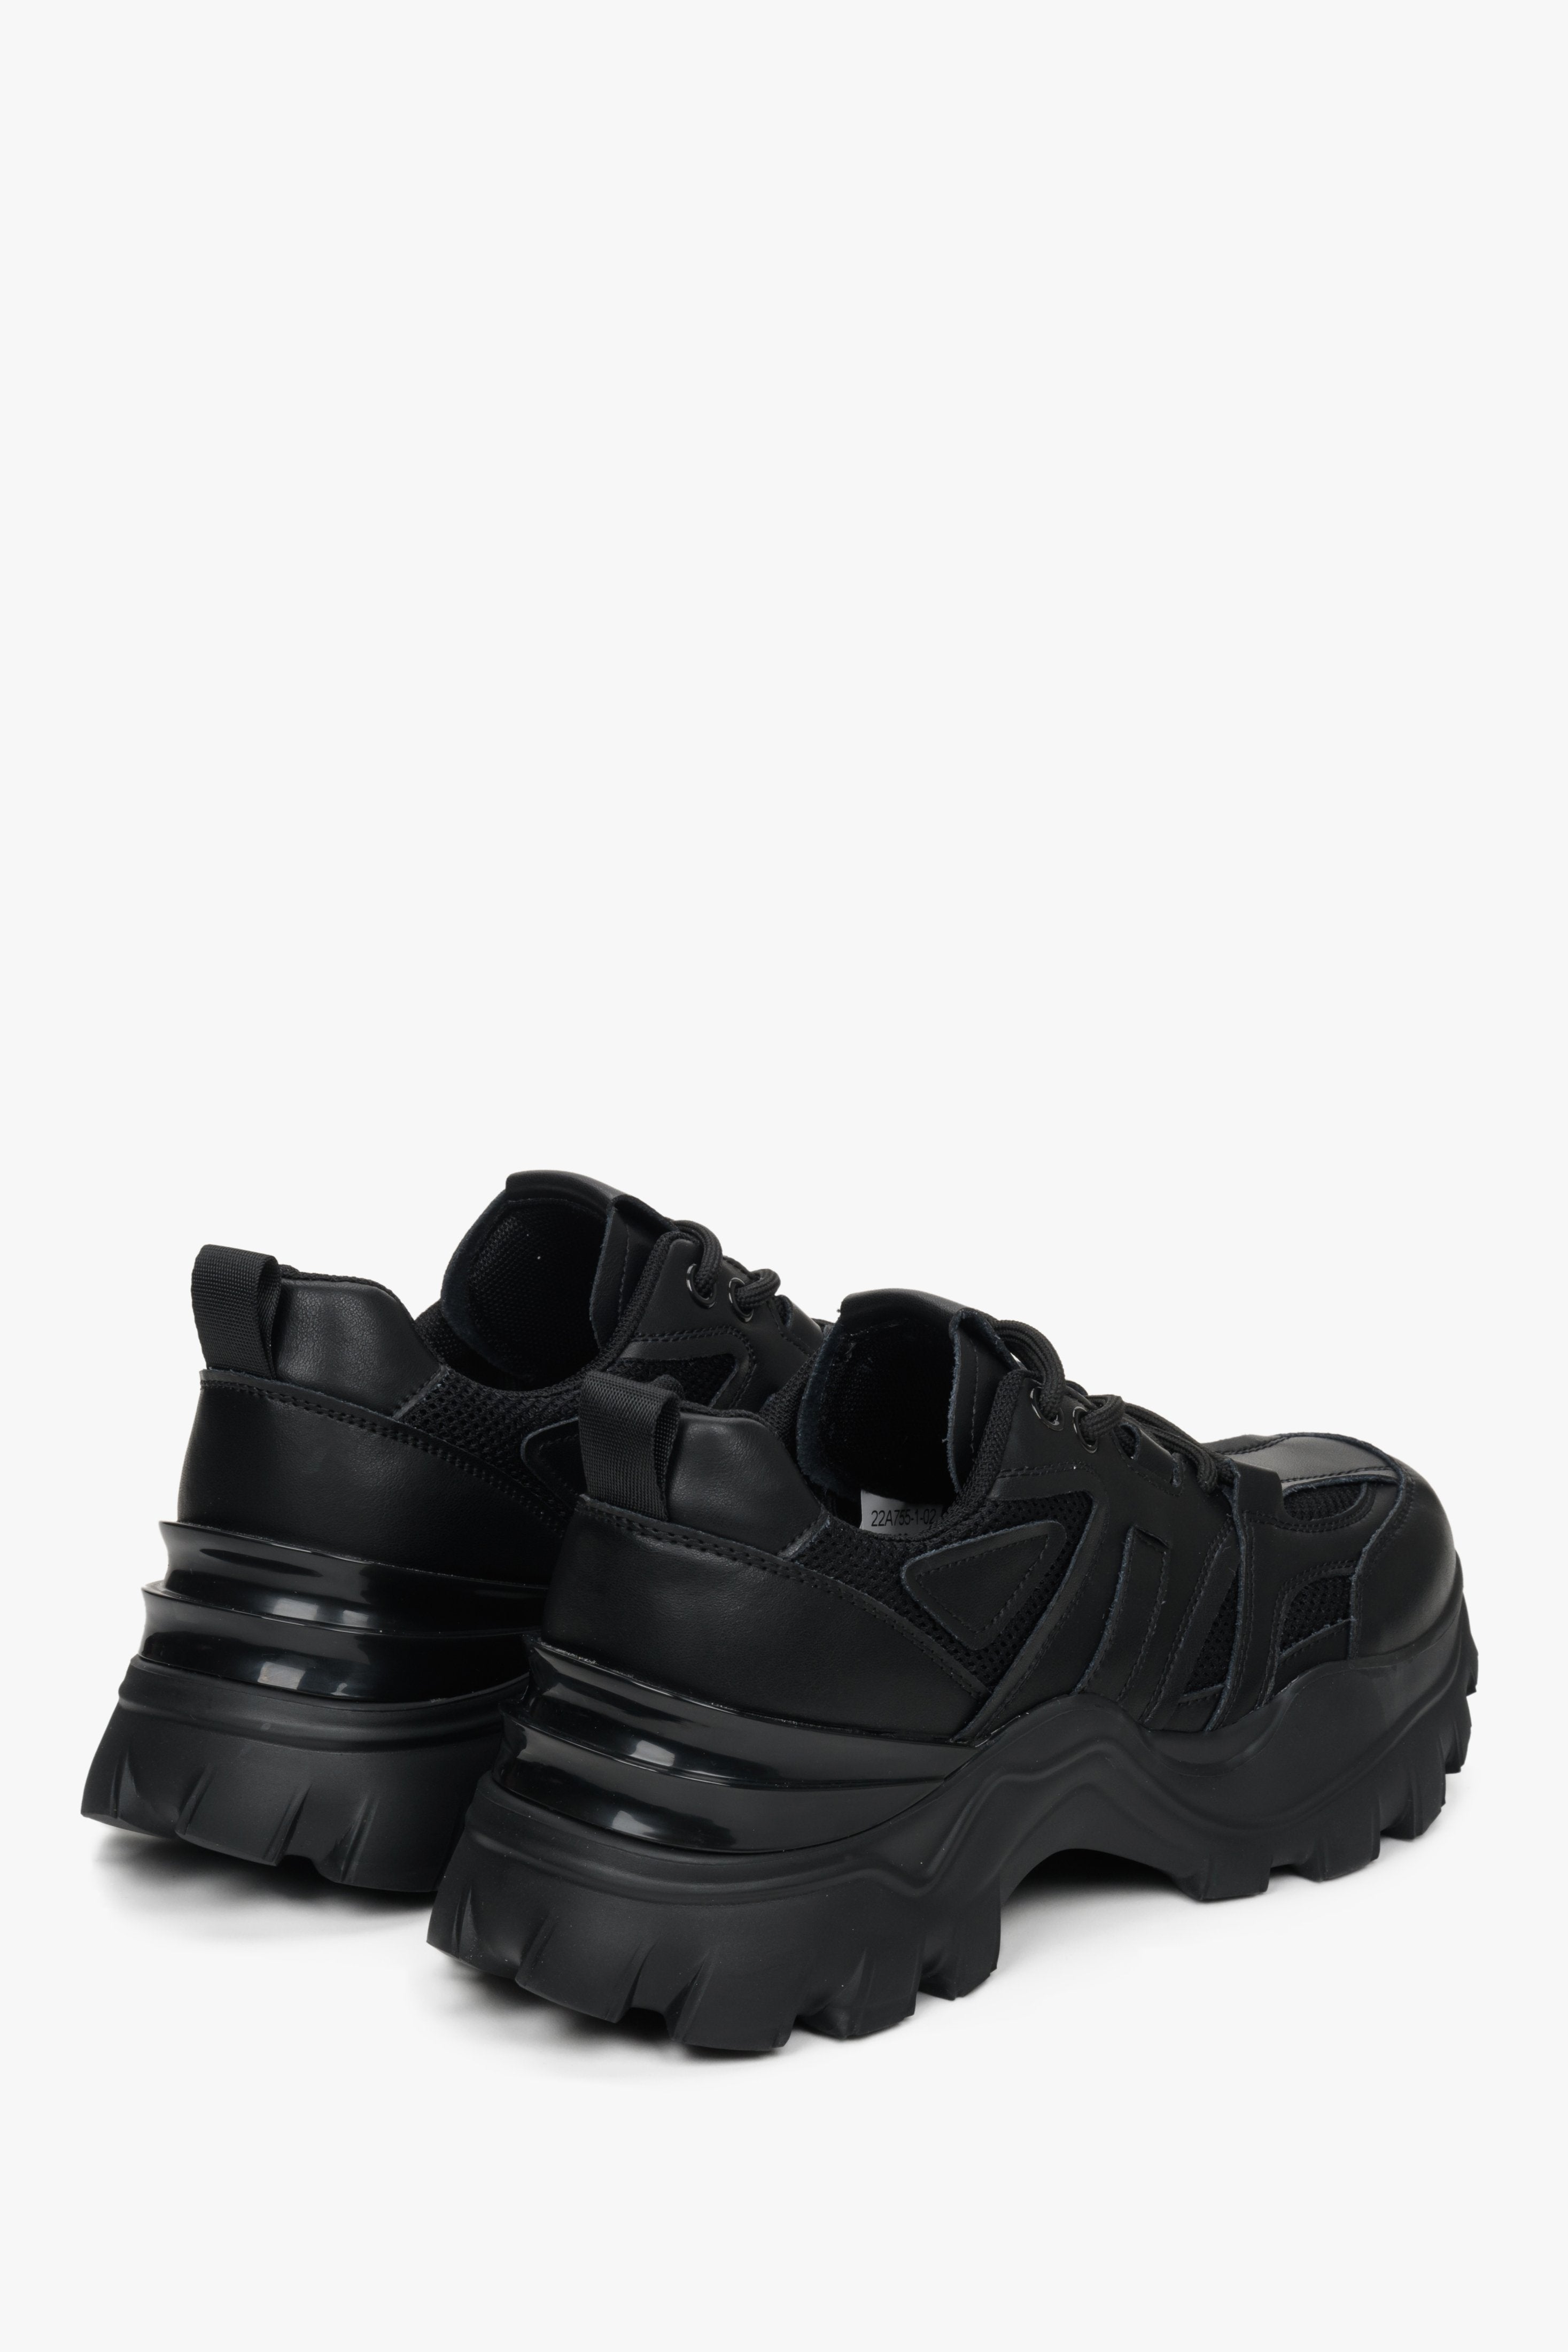 Czarne sneakersy damskie na wiosnę i jesień ES 8 - zbliżenie na zapiętek i przyszwę boczną obuwia.